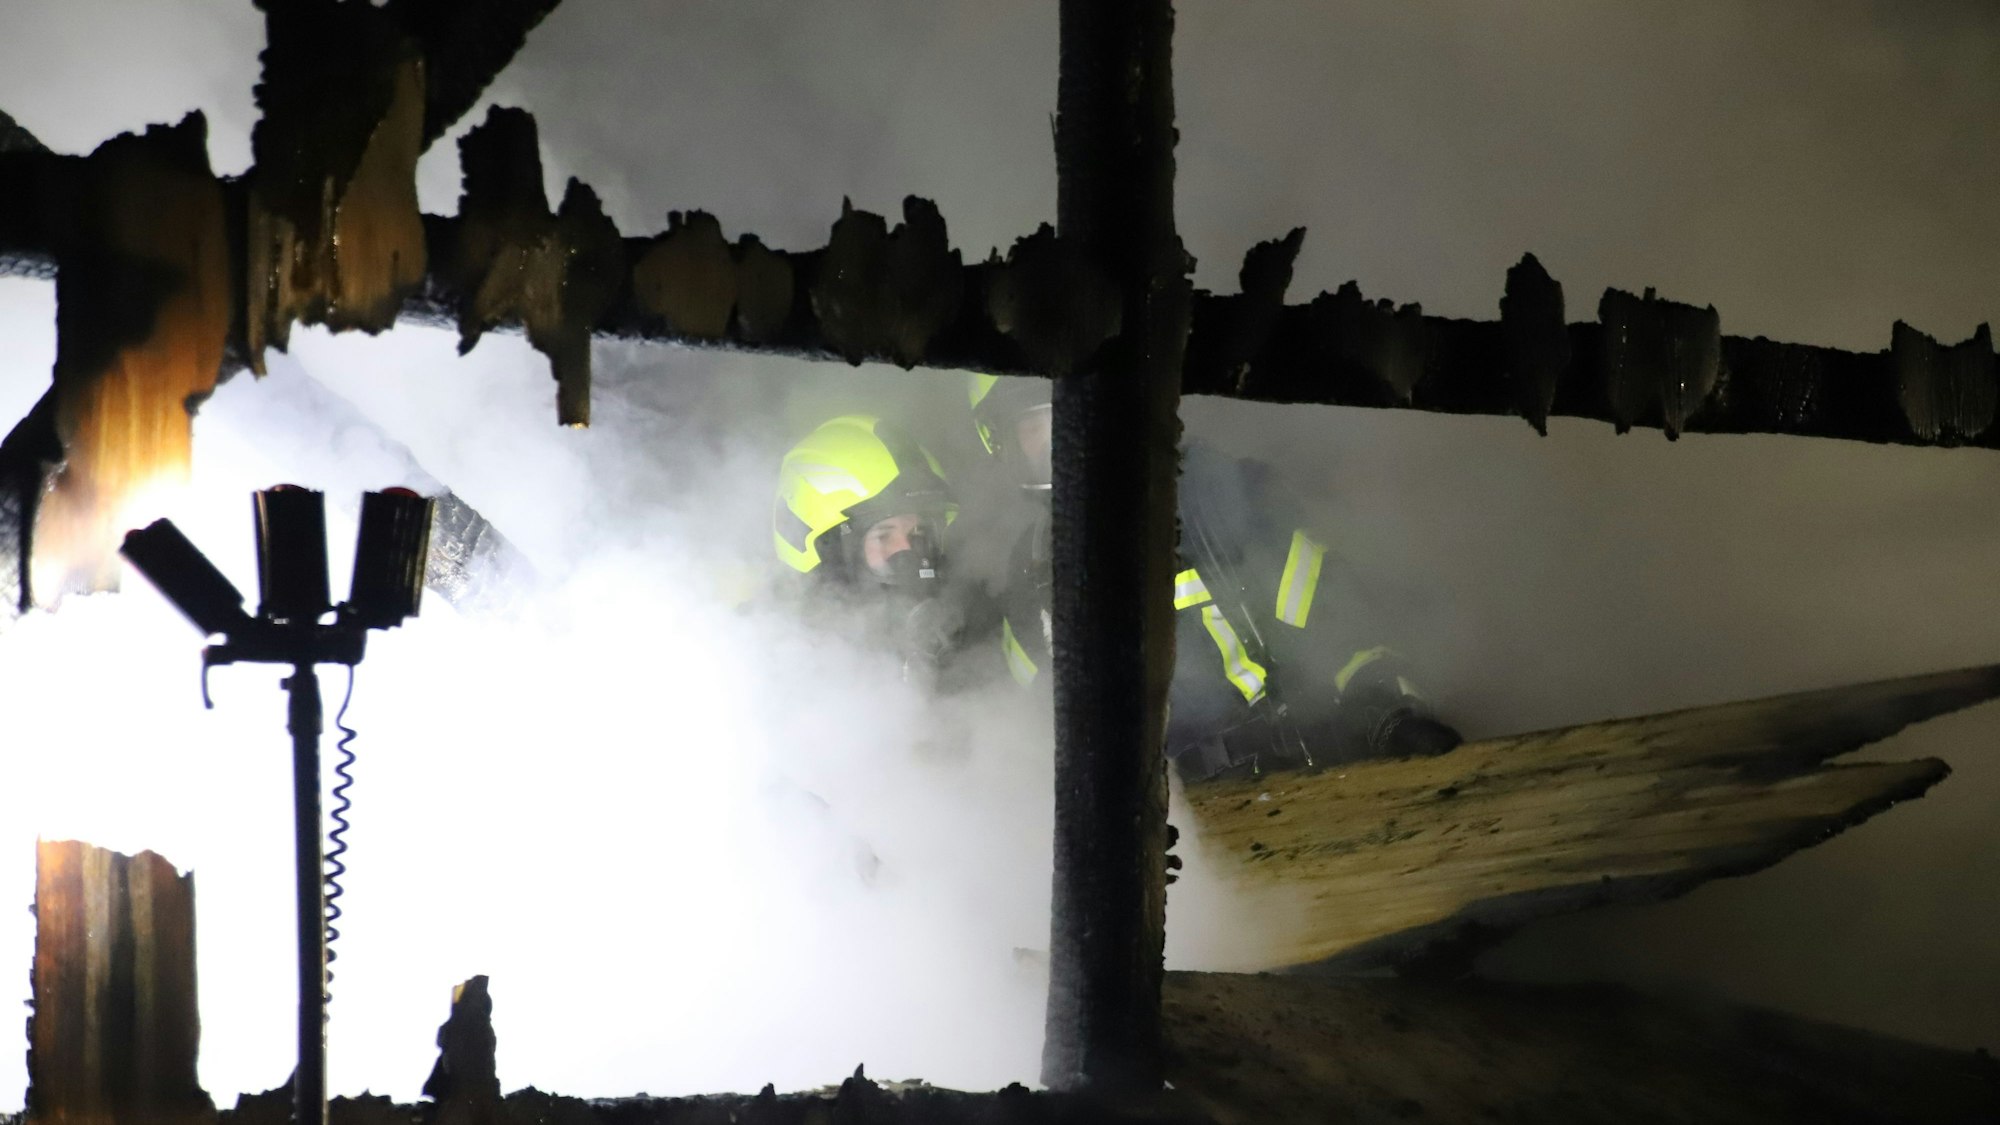 Trupps unter Atemschutz bekämpften das Feuer im Inneren, die Außenwände waren da schön zerstört.